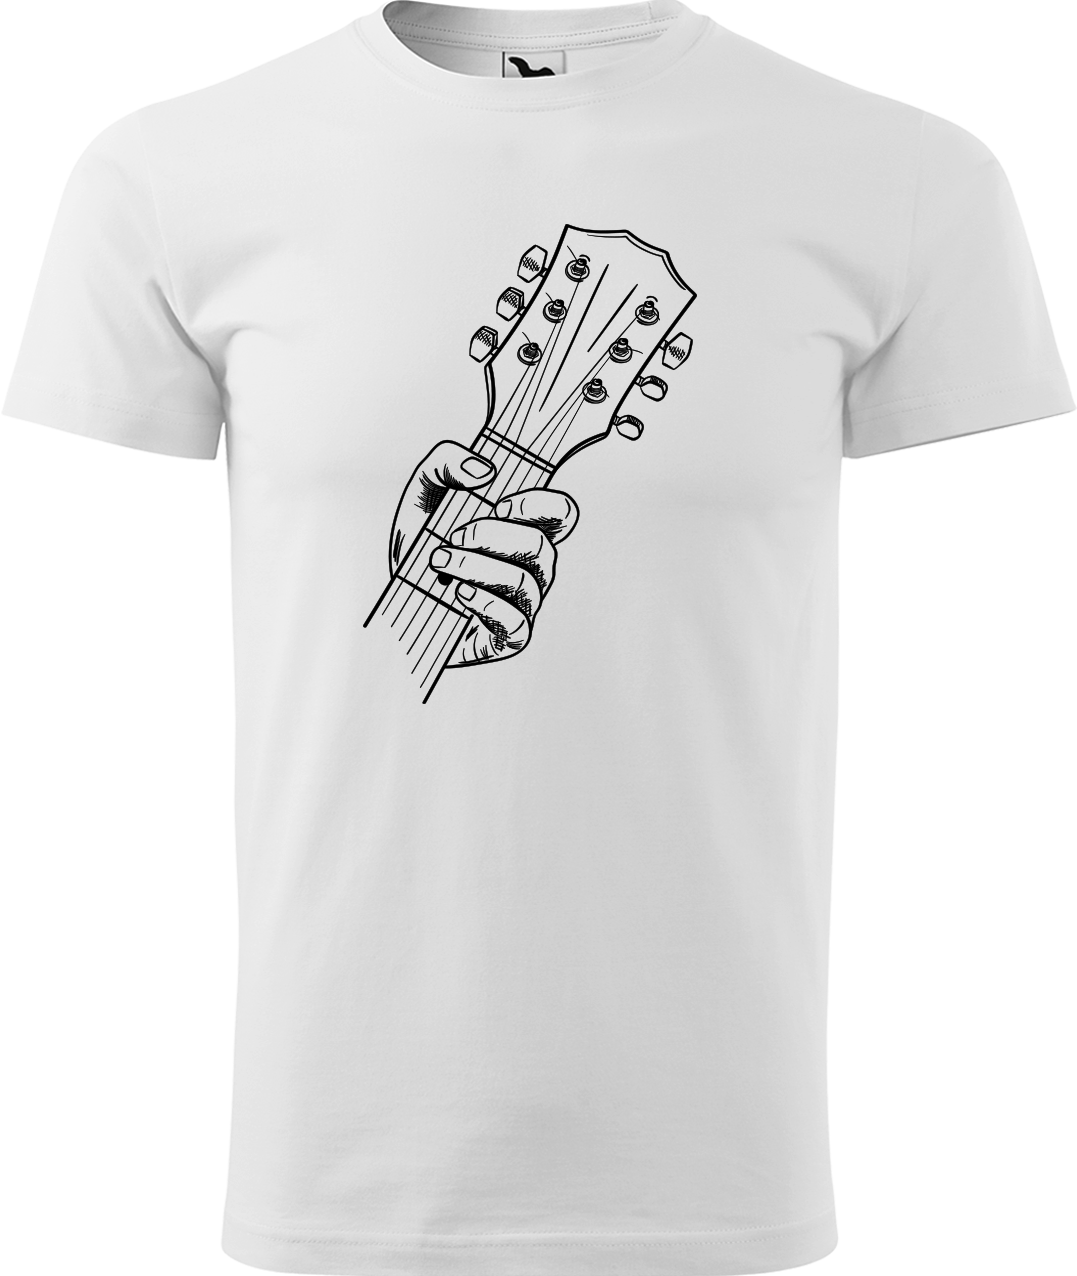 Pánské tričko s kytarou - Hlava kytary Velikost: 3XL, Barva: Bílá (00)